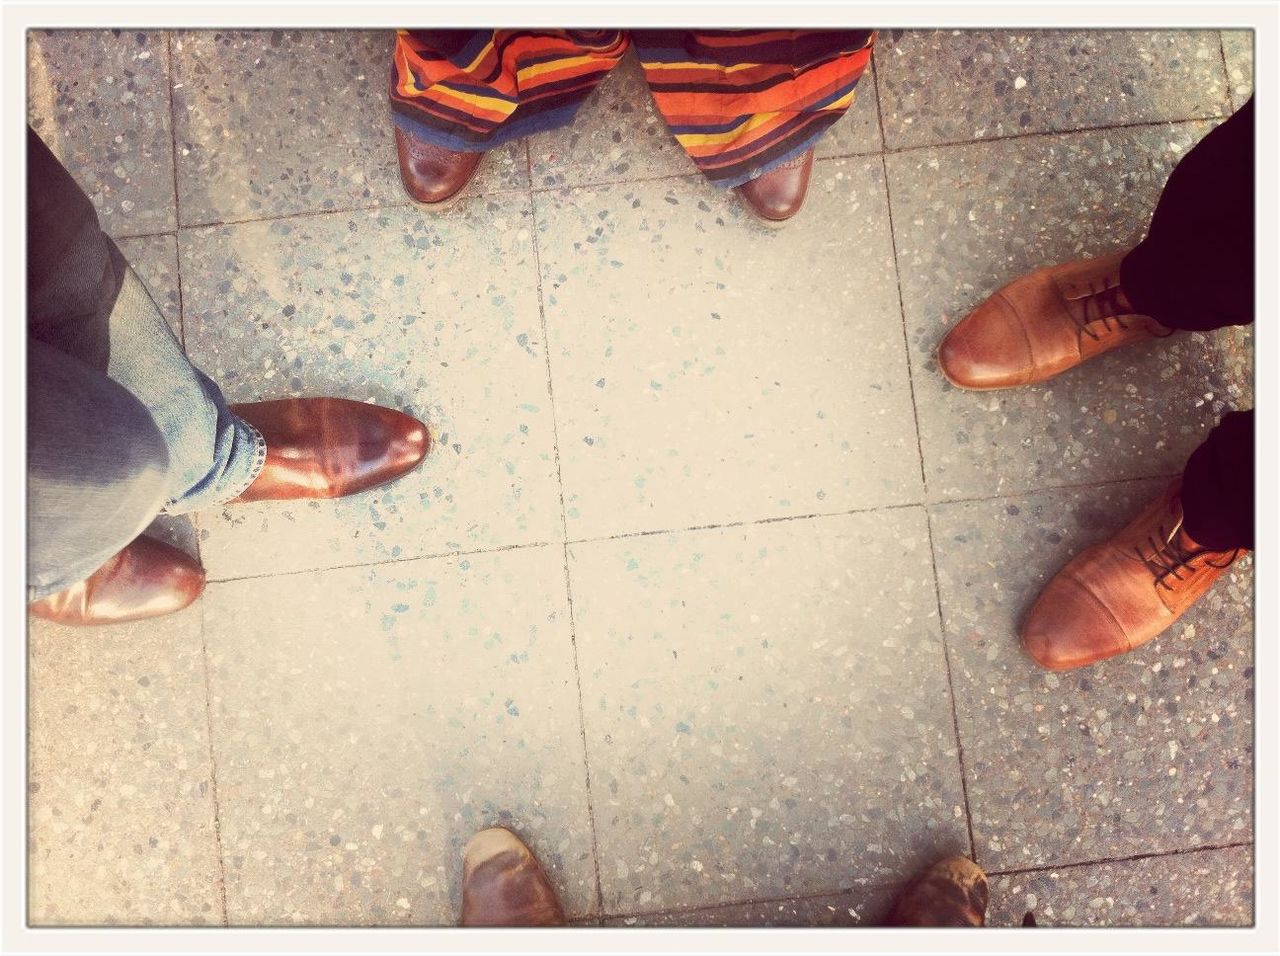 Directly above shot of men standing together on tiled floor